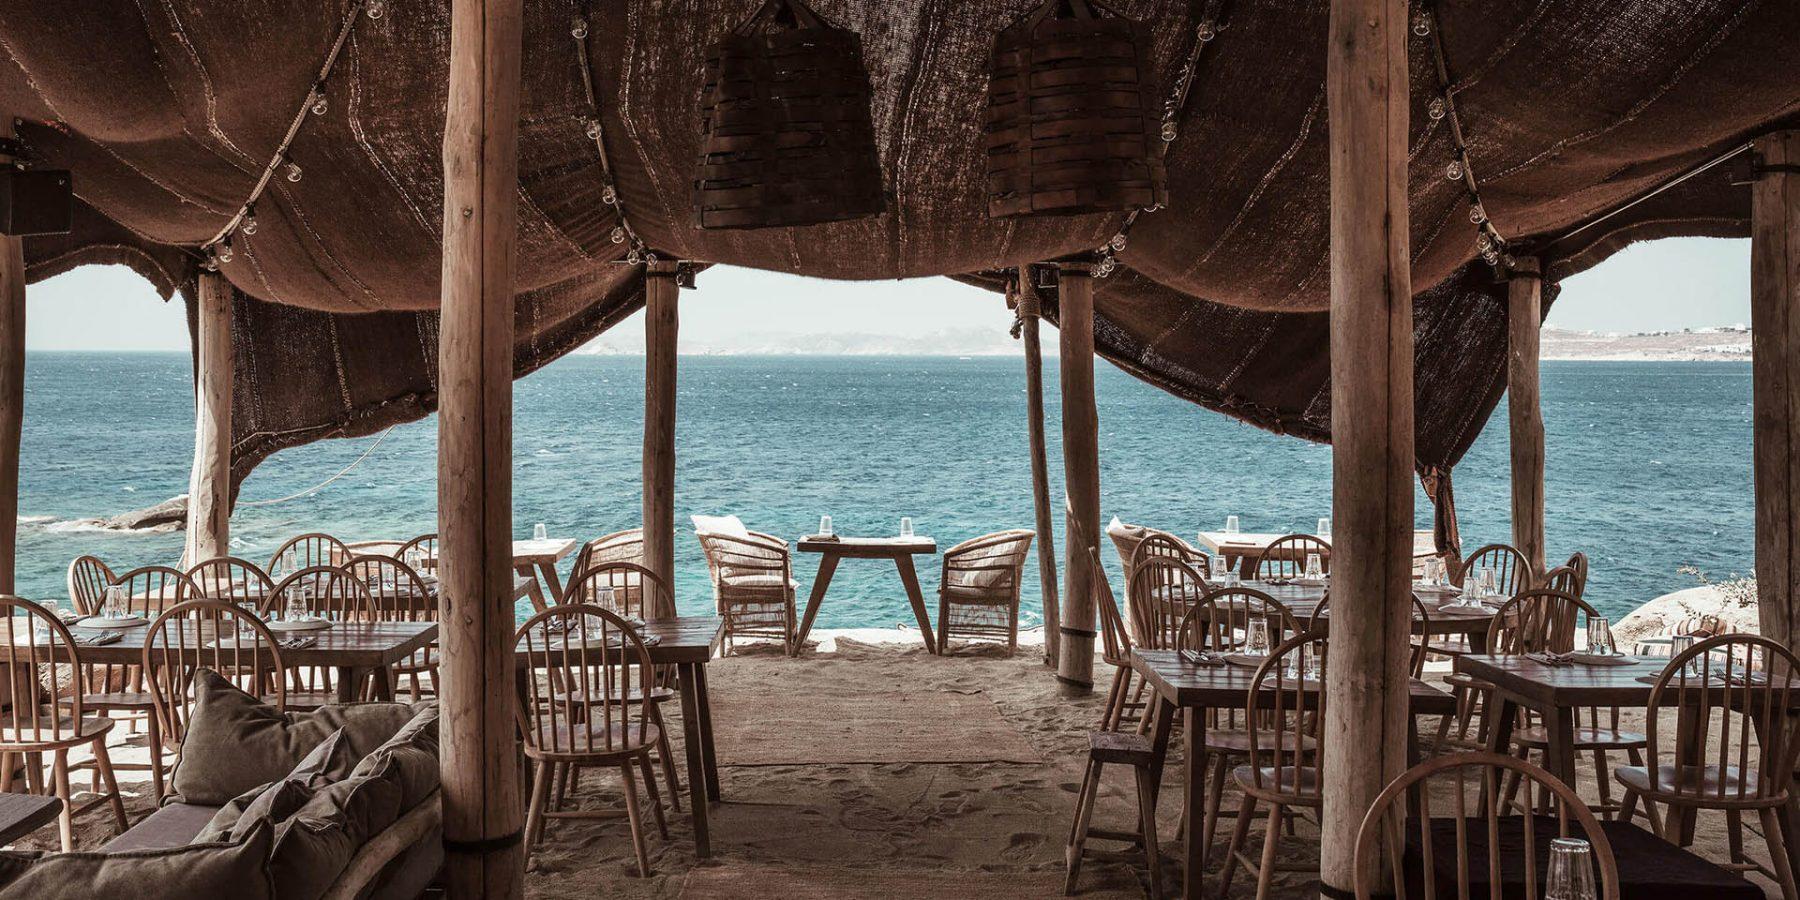 Restaurant on the beach